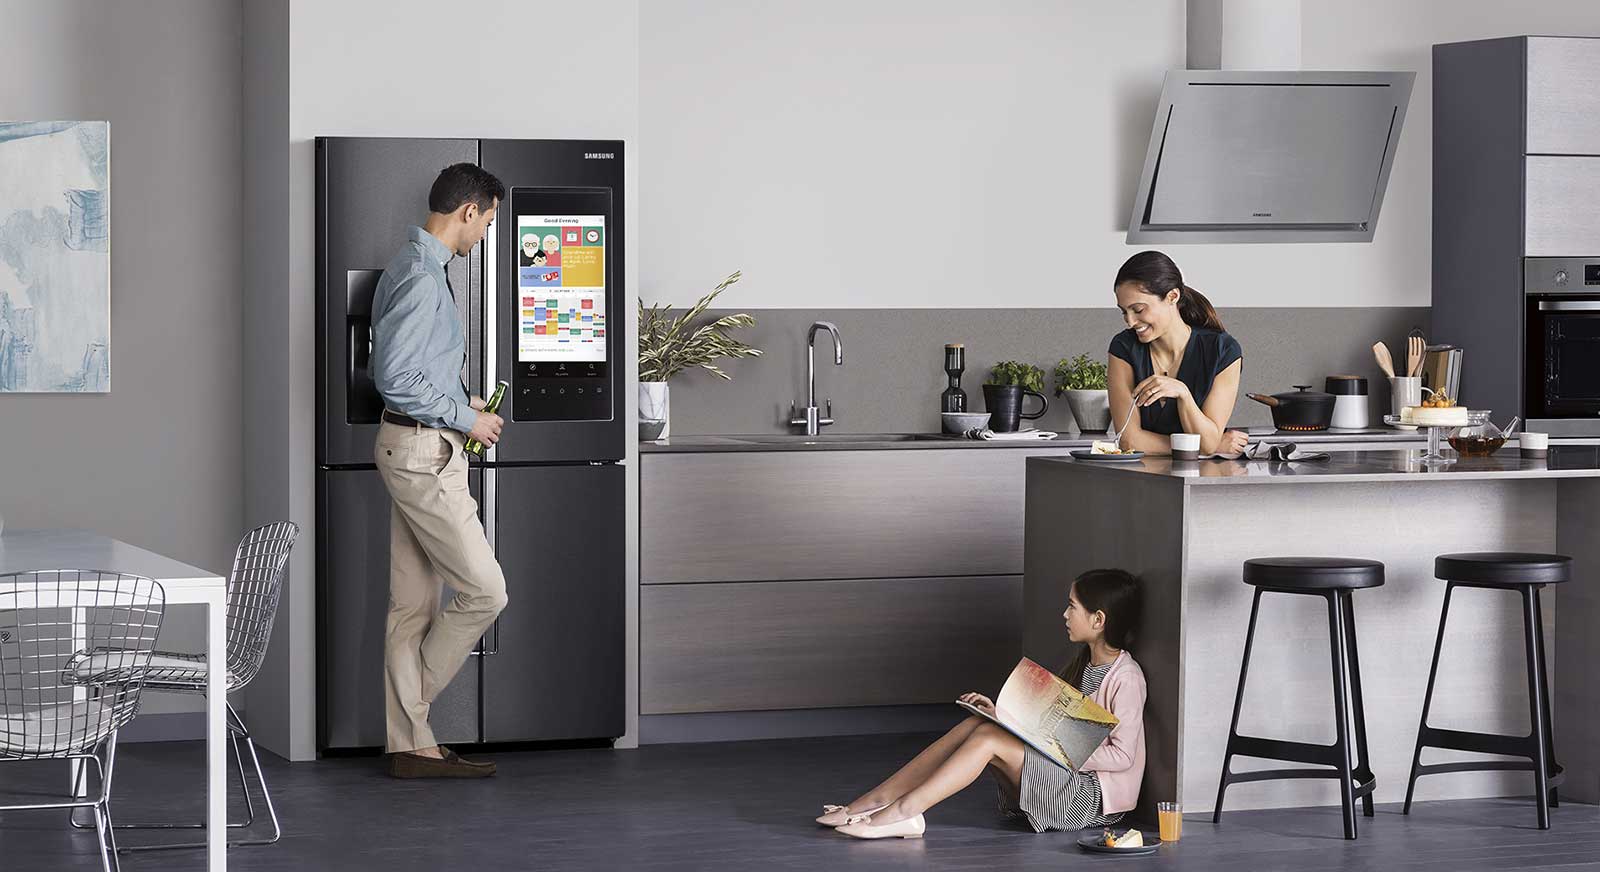 Samsung, LG vie for smartest fridge around – Pickr